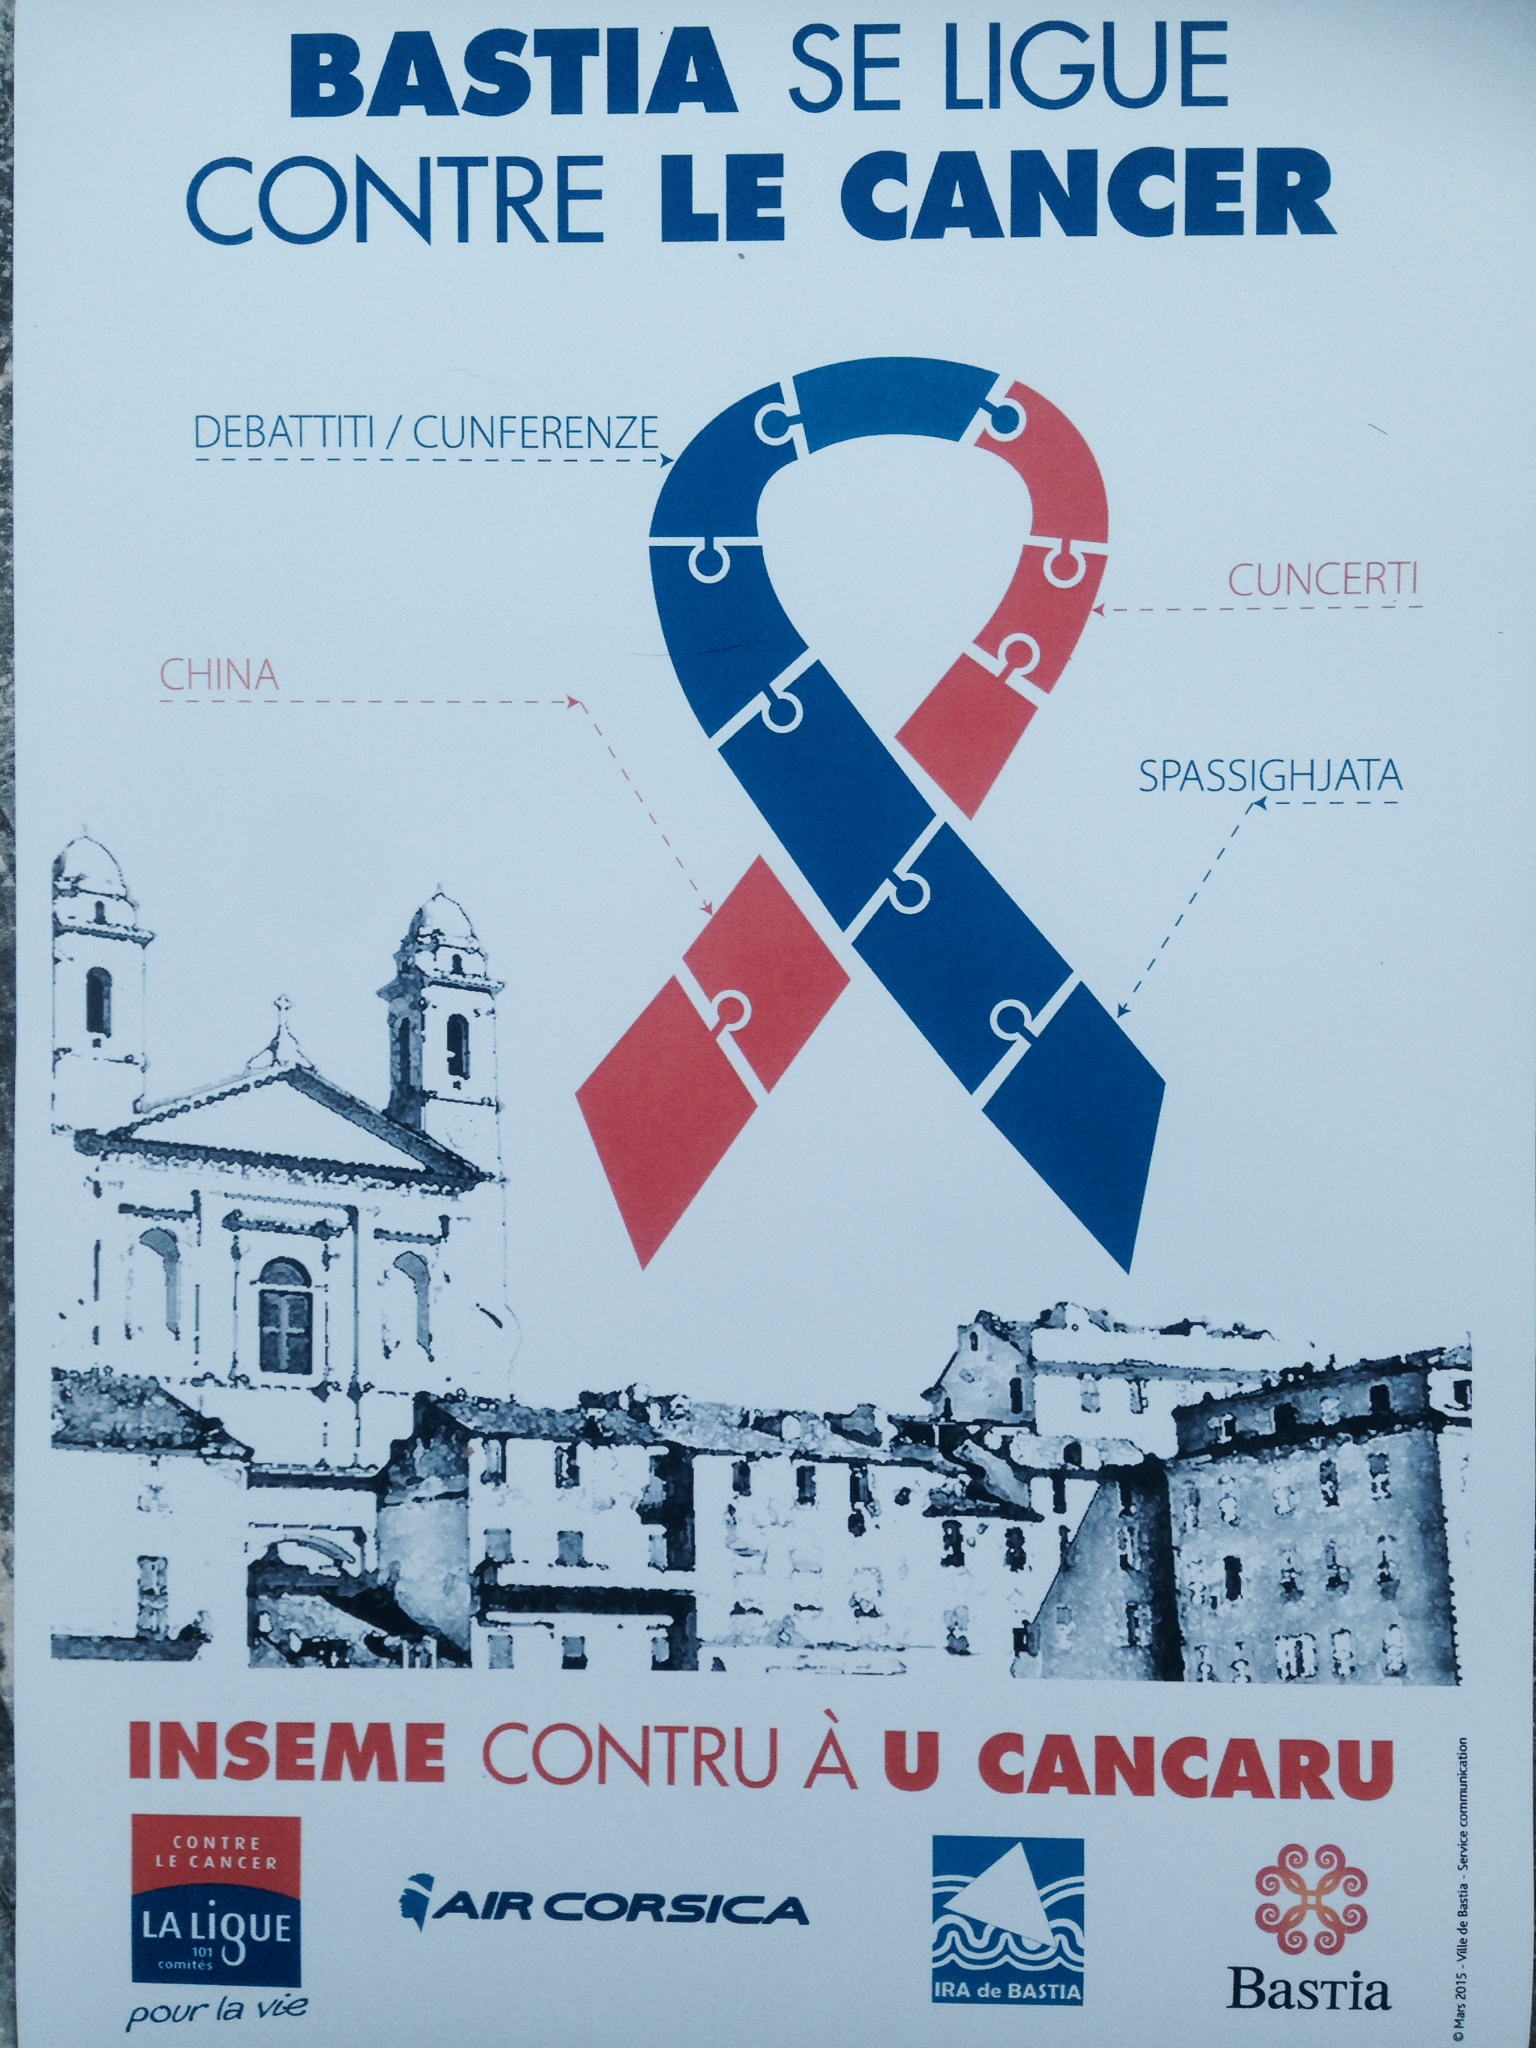 Bastia : La ville "se ligue contre le cancer"